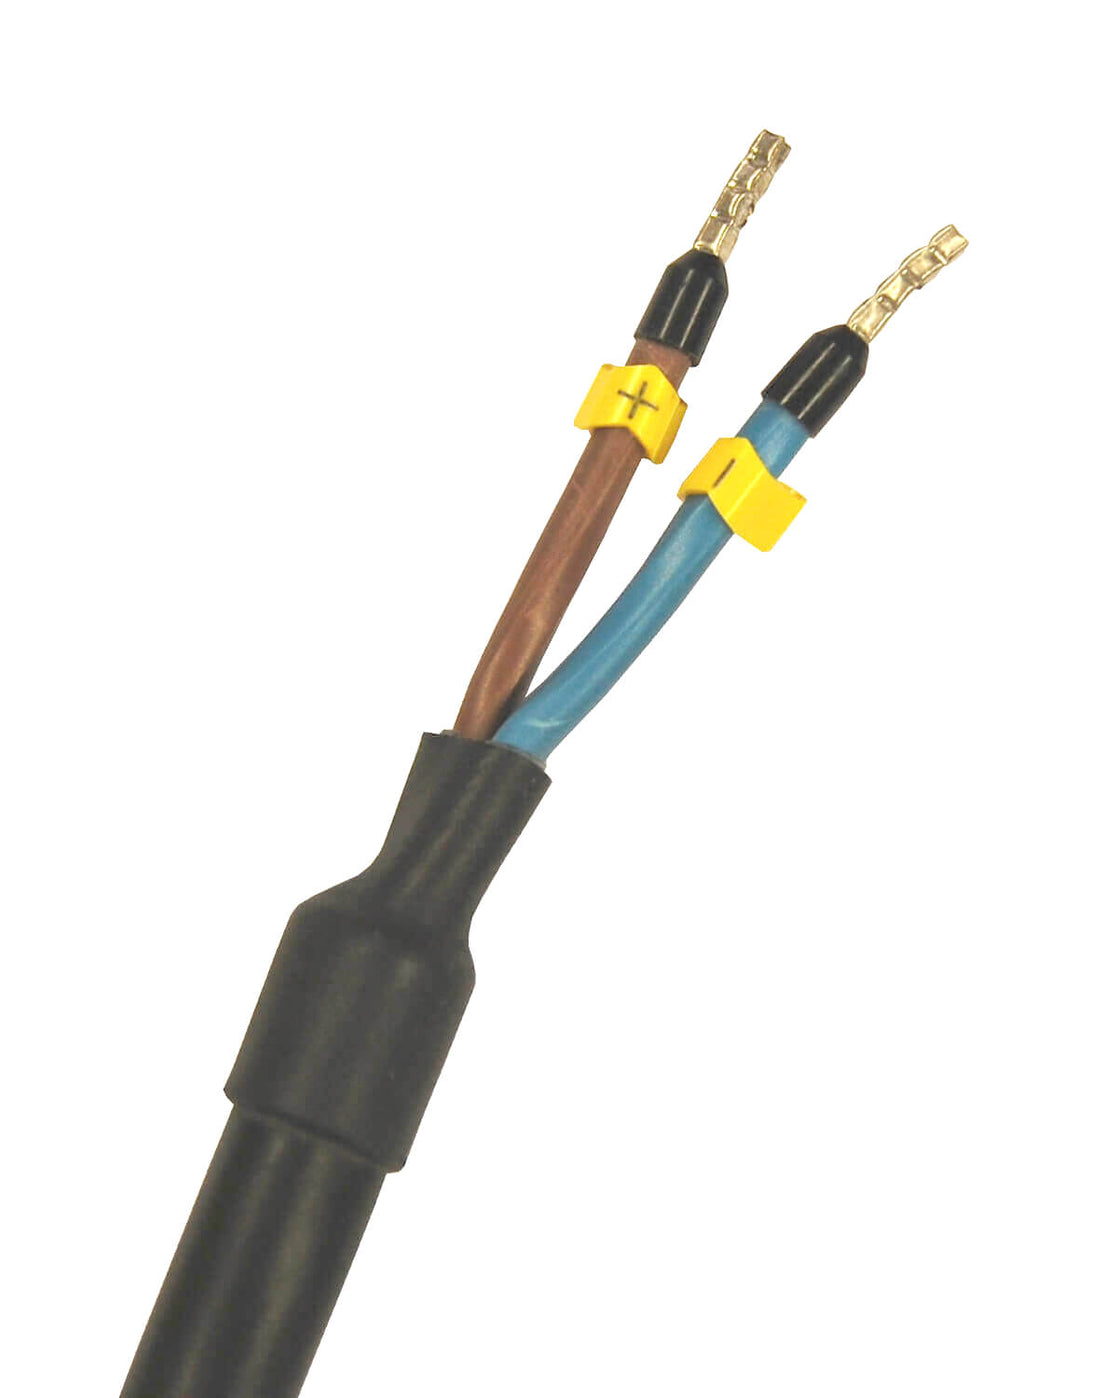 Ein schwarz-gelbes Kabel mit zwei Adern, das für die PURION 2500 36 W 24 V DC Basic UV-C-Desinfektionsanlage der PURION GmbH konzipiert und für den Einsatz in Trinkwasser geeignet ist.